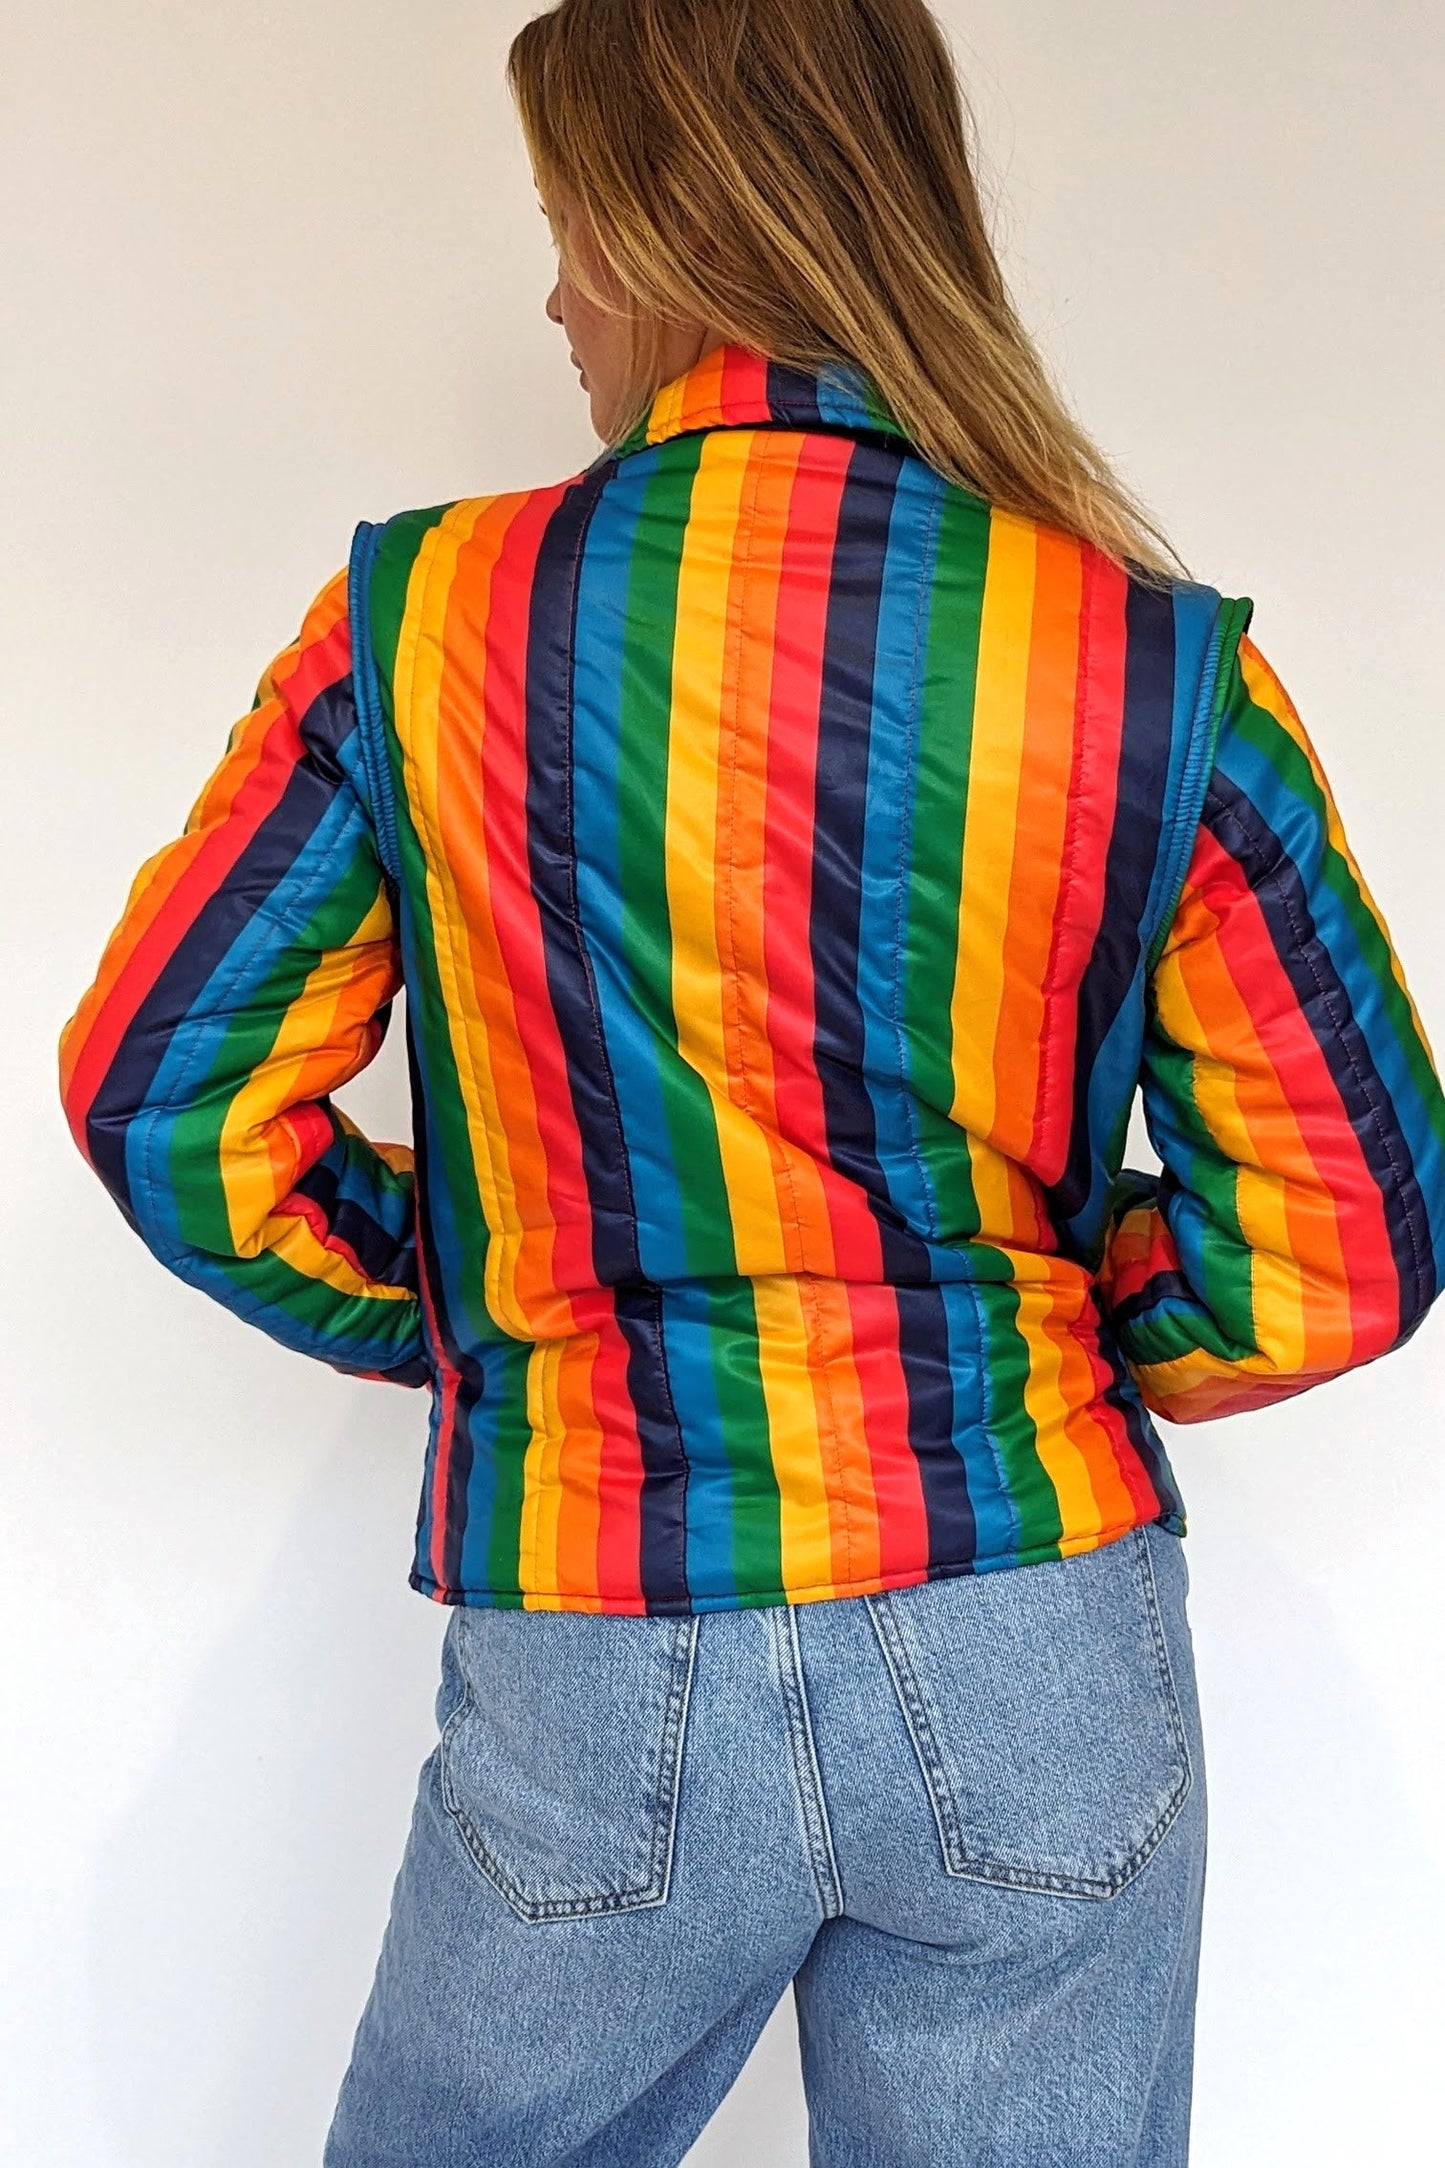 vintage ski jacket in rainbow